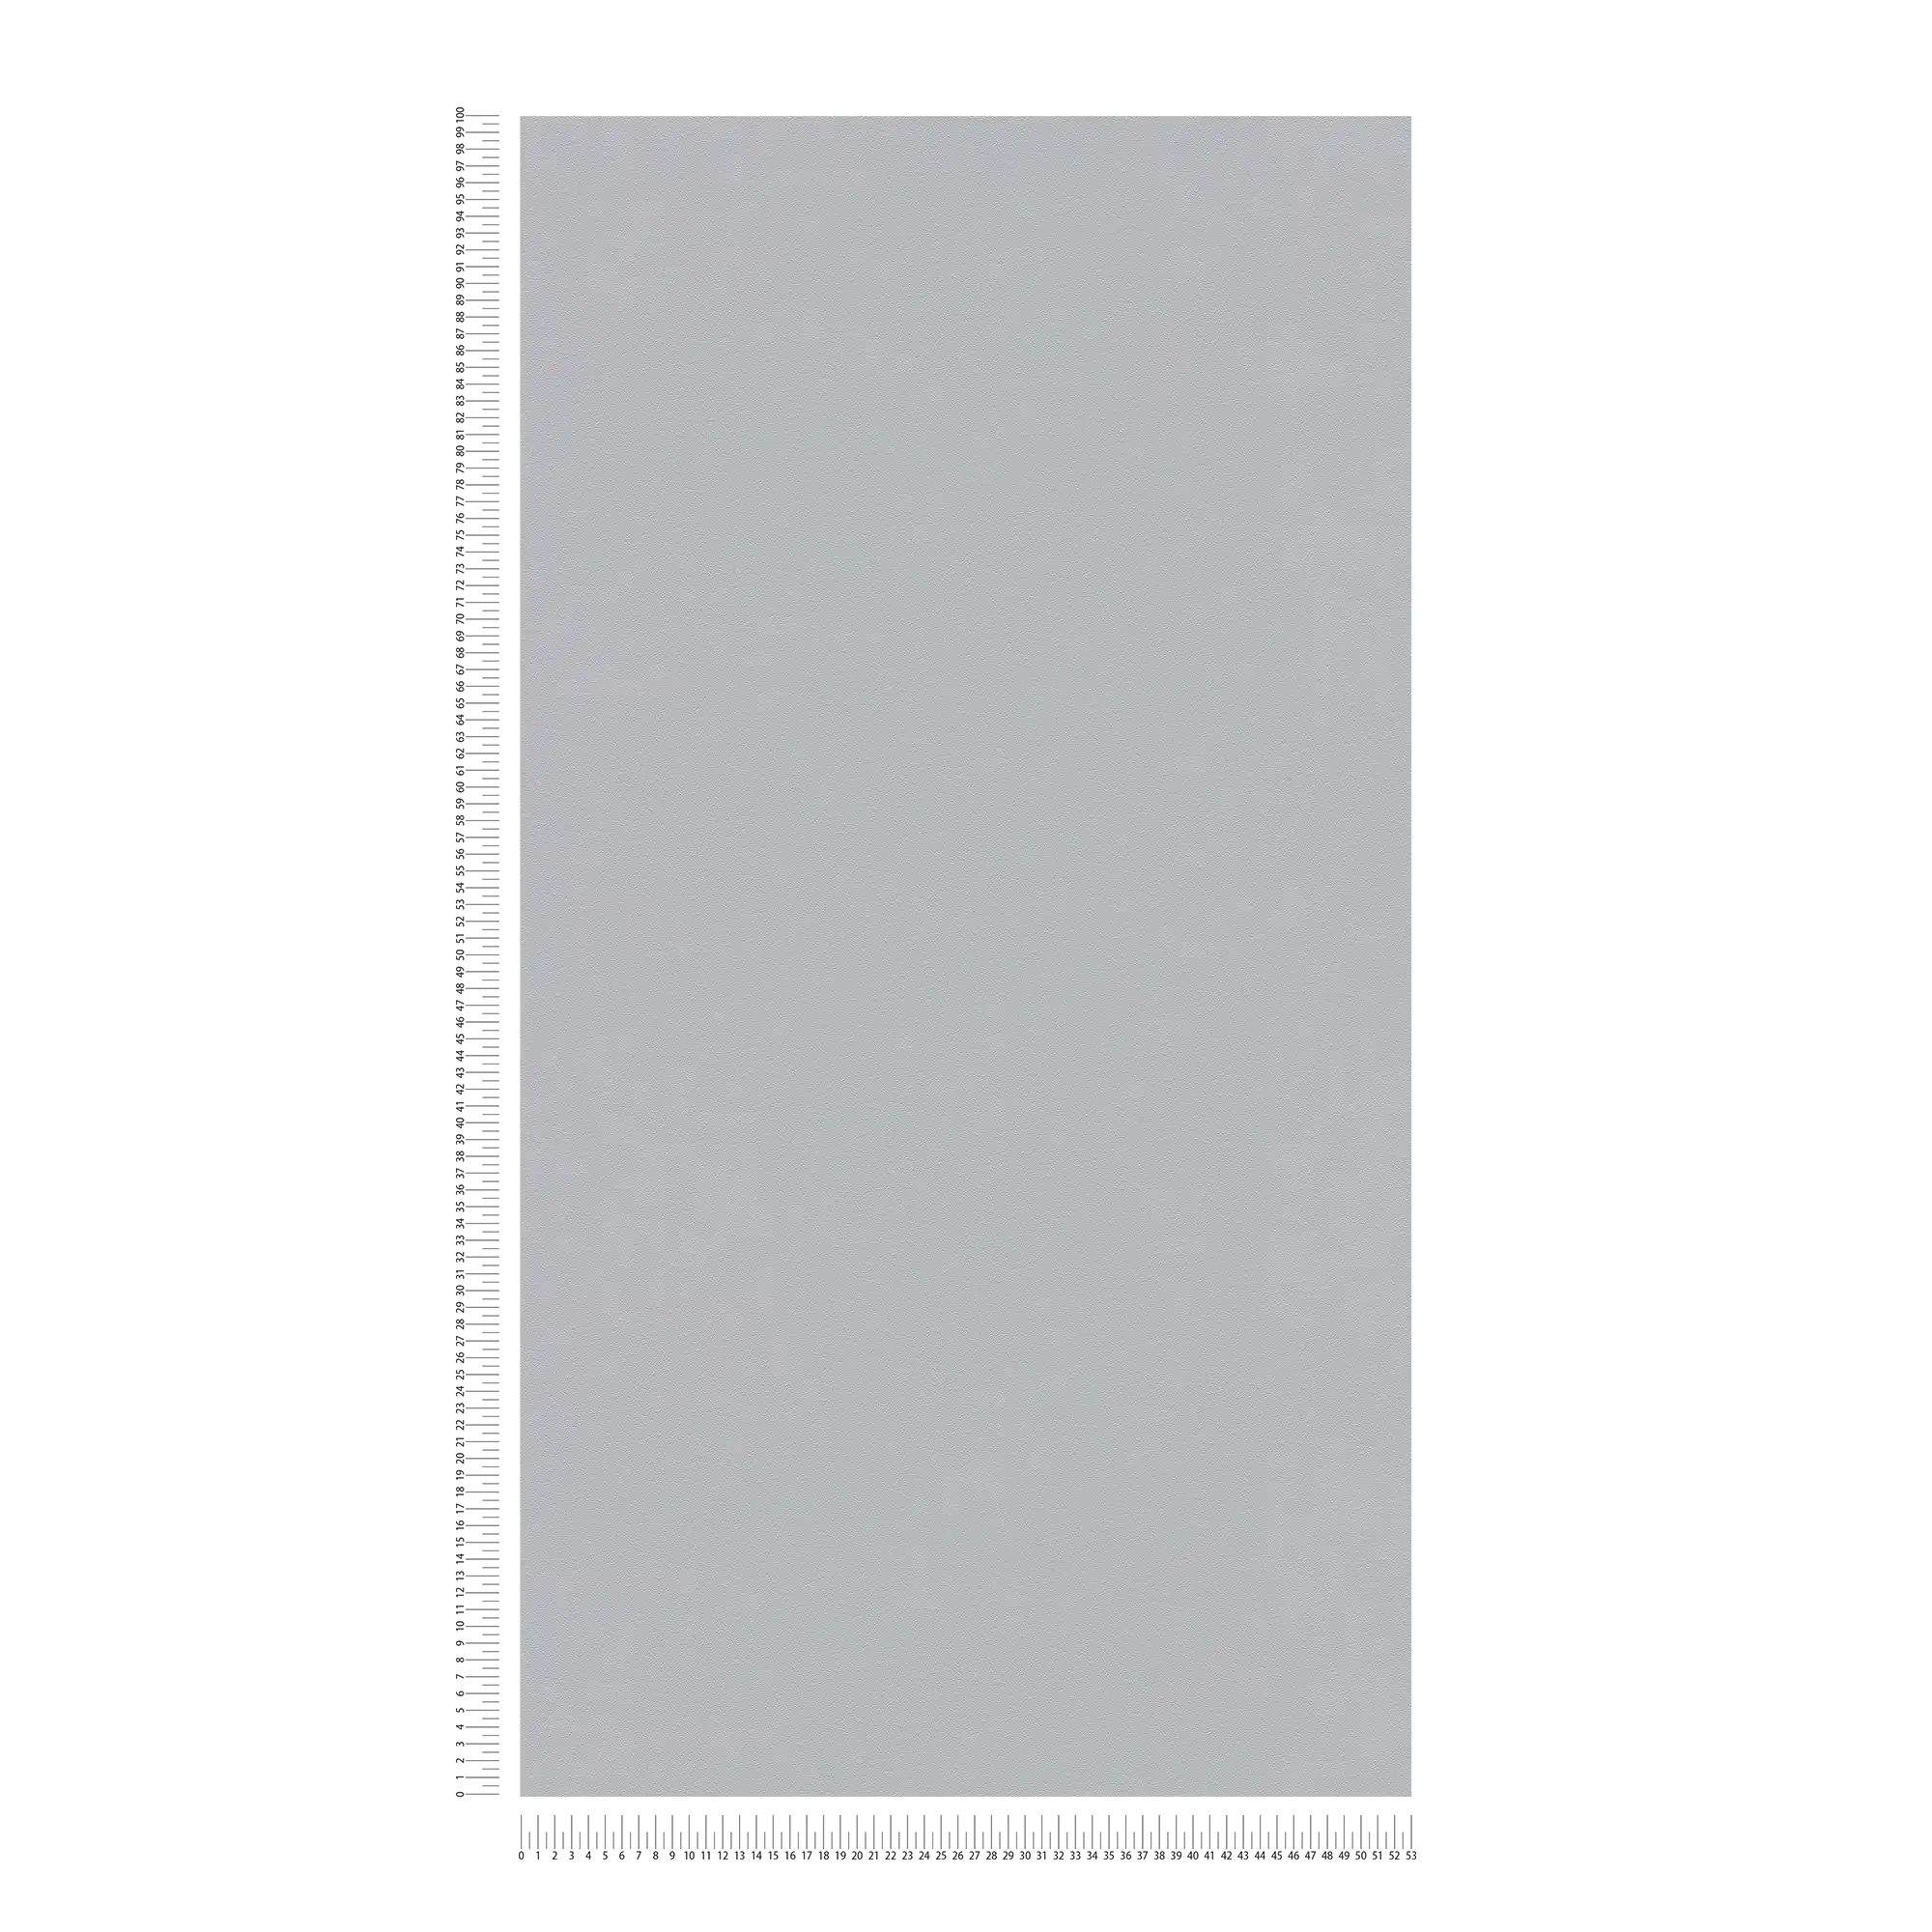             Carta da parati liscia grigio seta opaca con struttura in rilievo
        